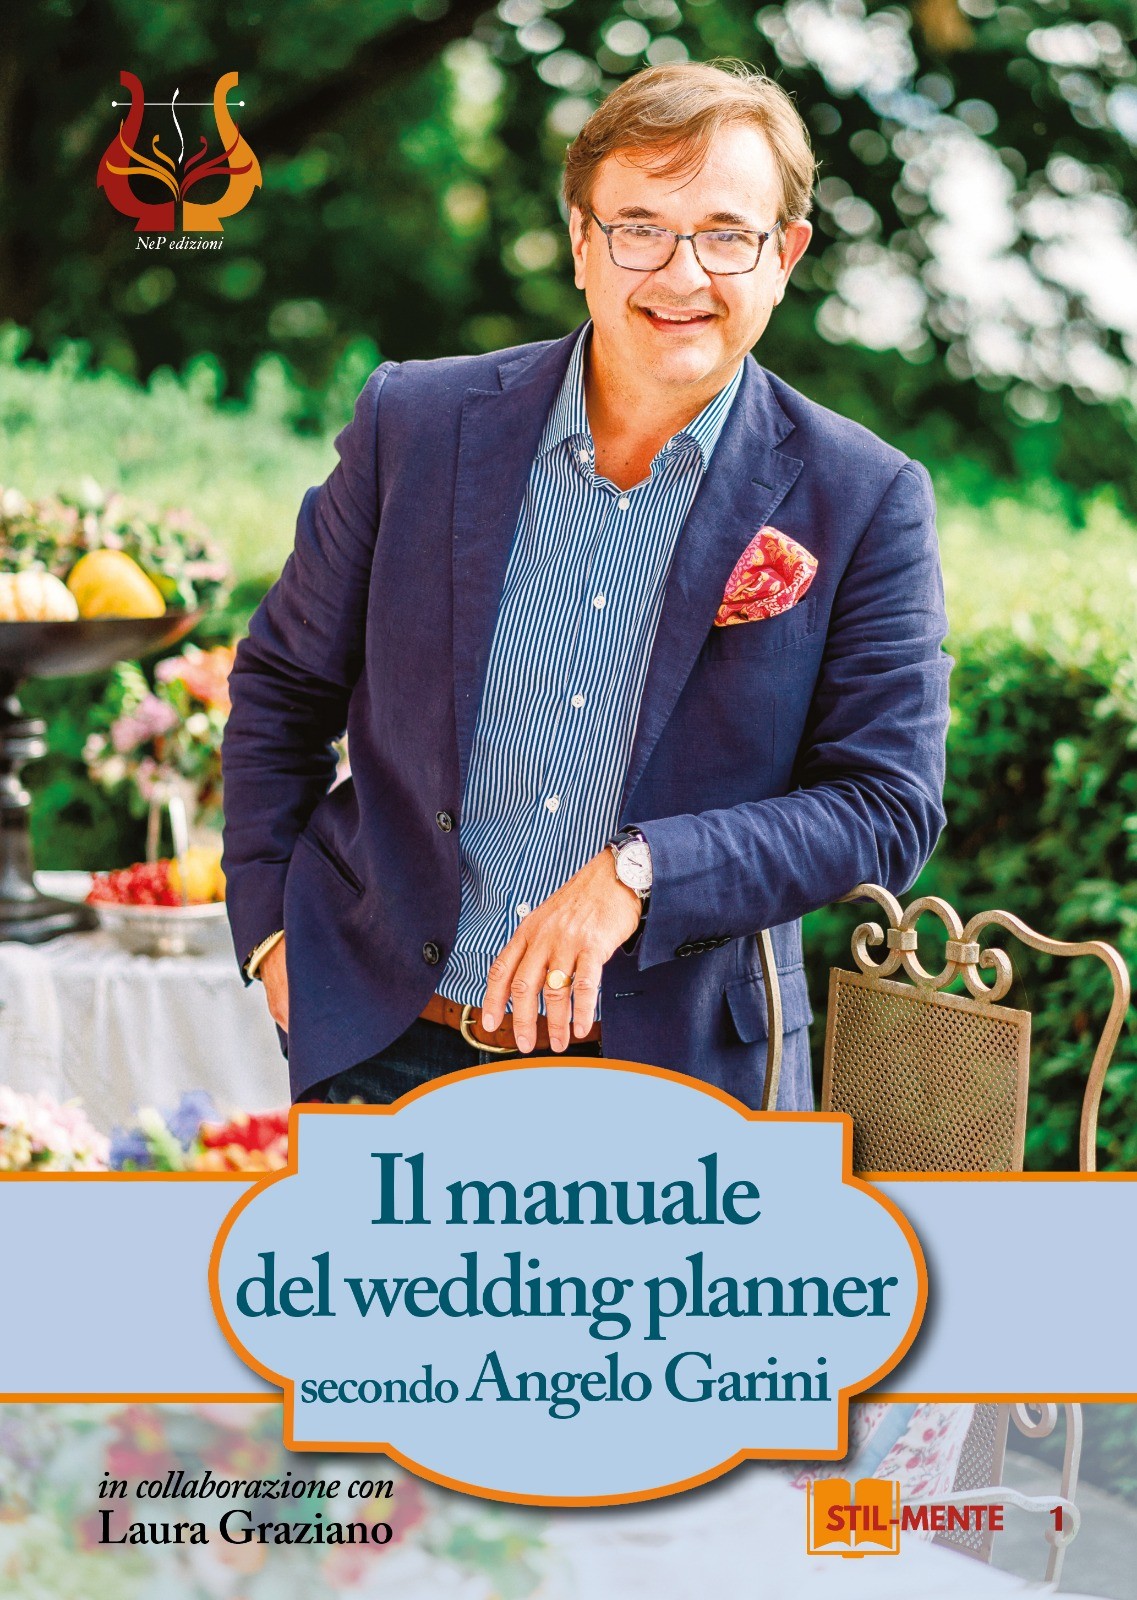 “Il manuale del wedding planner secondo Angelo Garini”